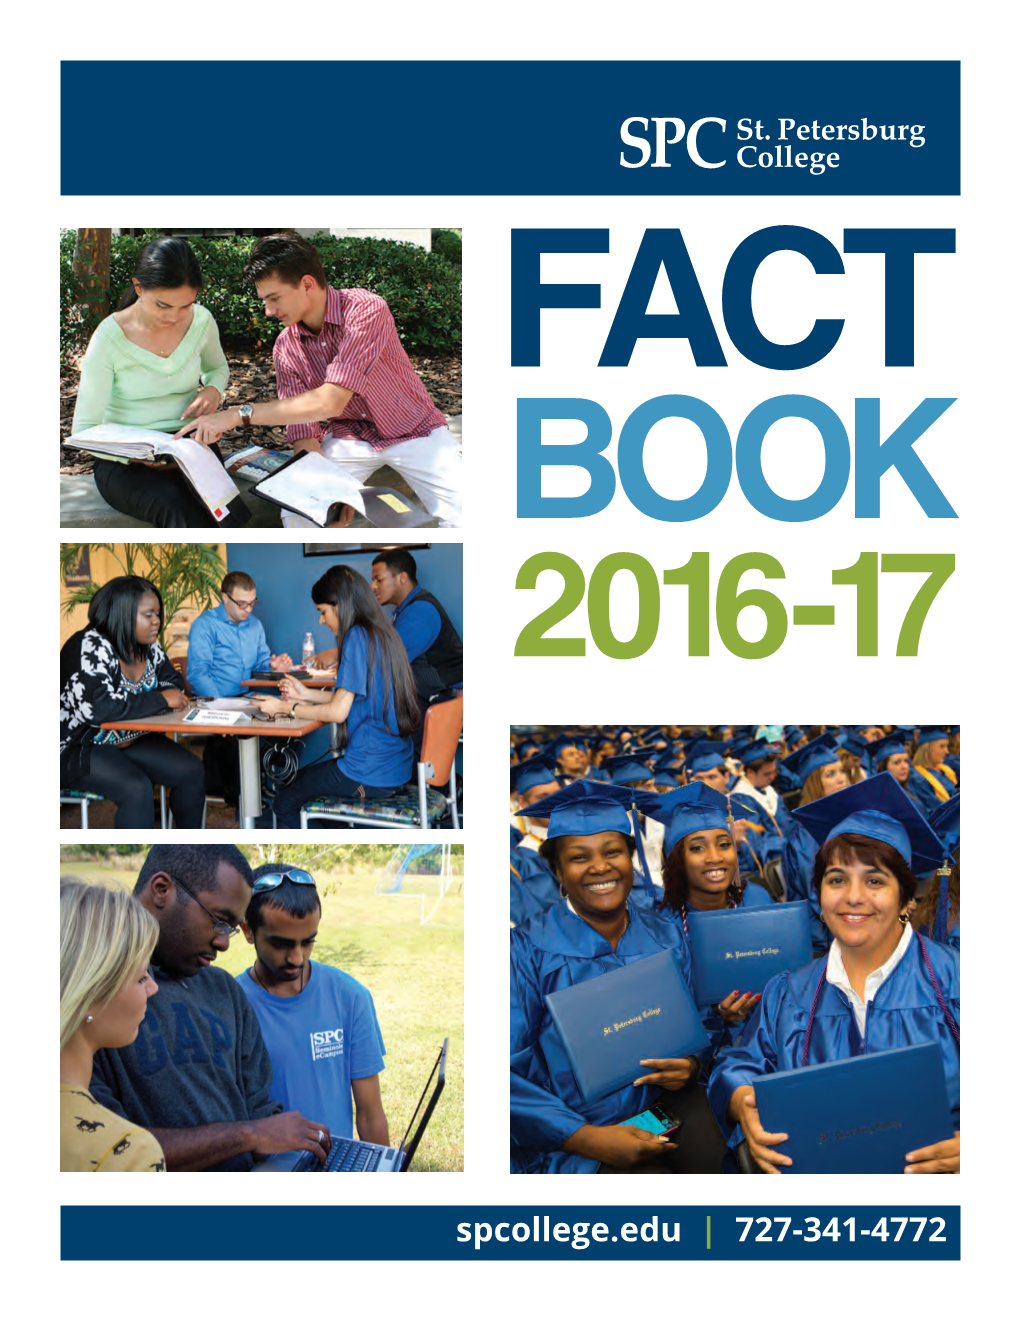 2016-2017 Fact Book